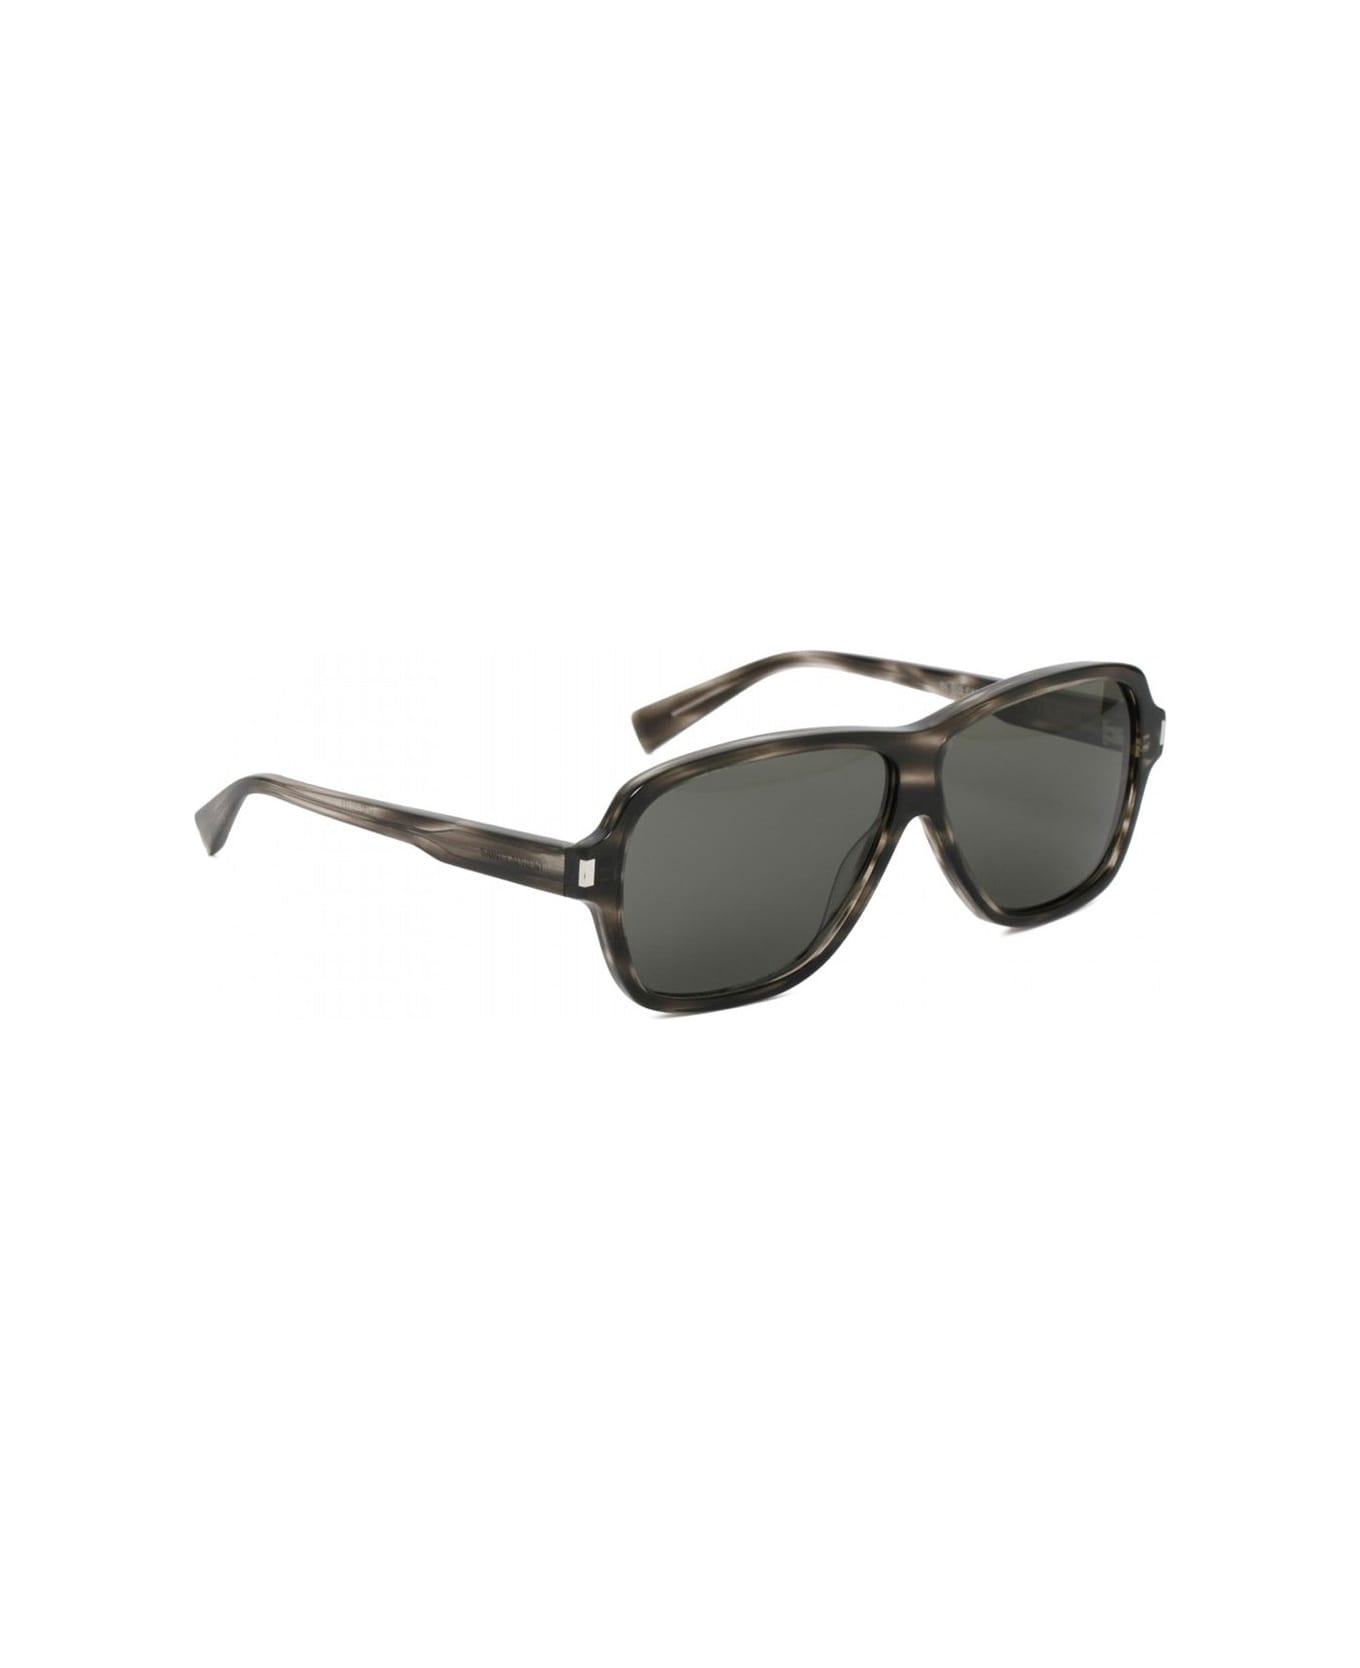 Saint Laurent 609 Aviator Sunglasses - Gray